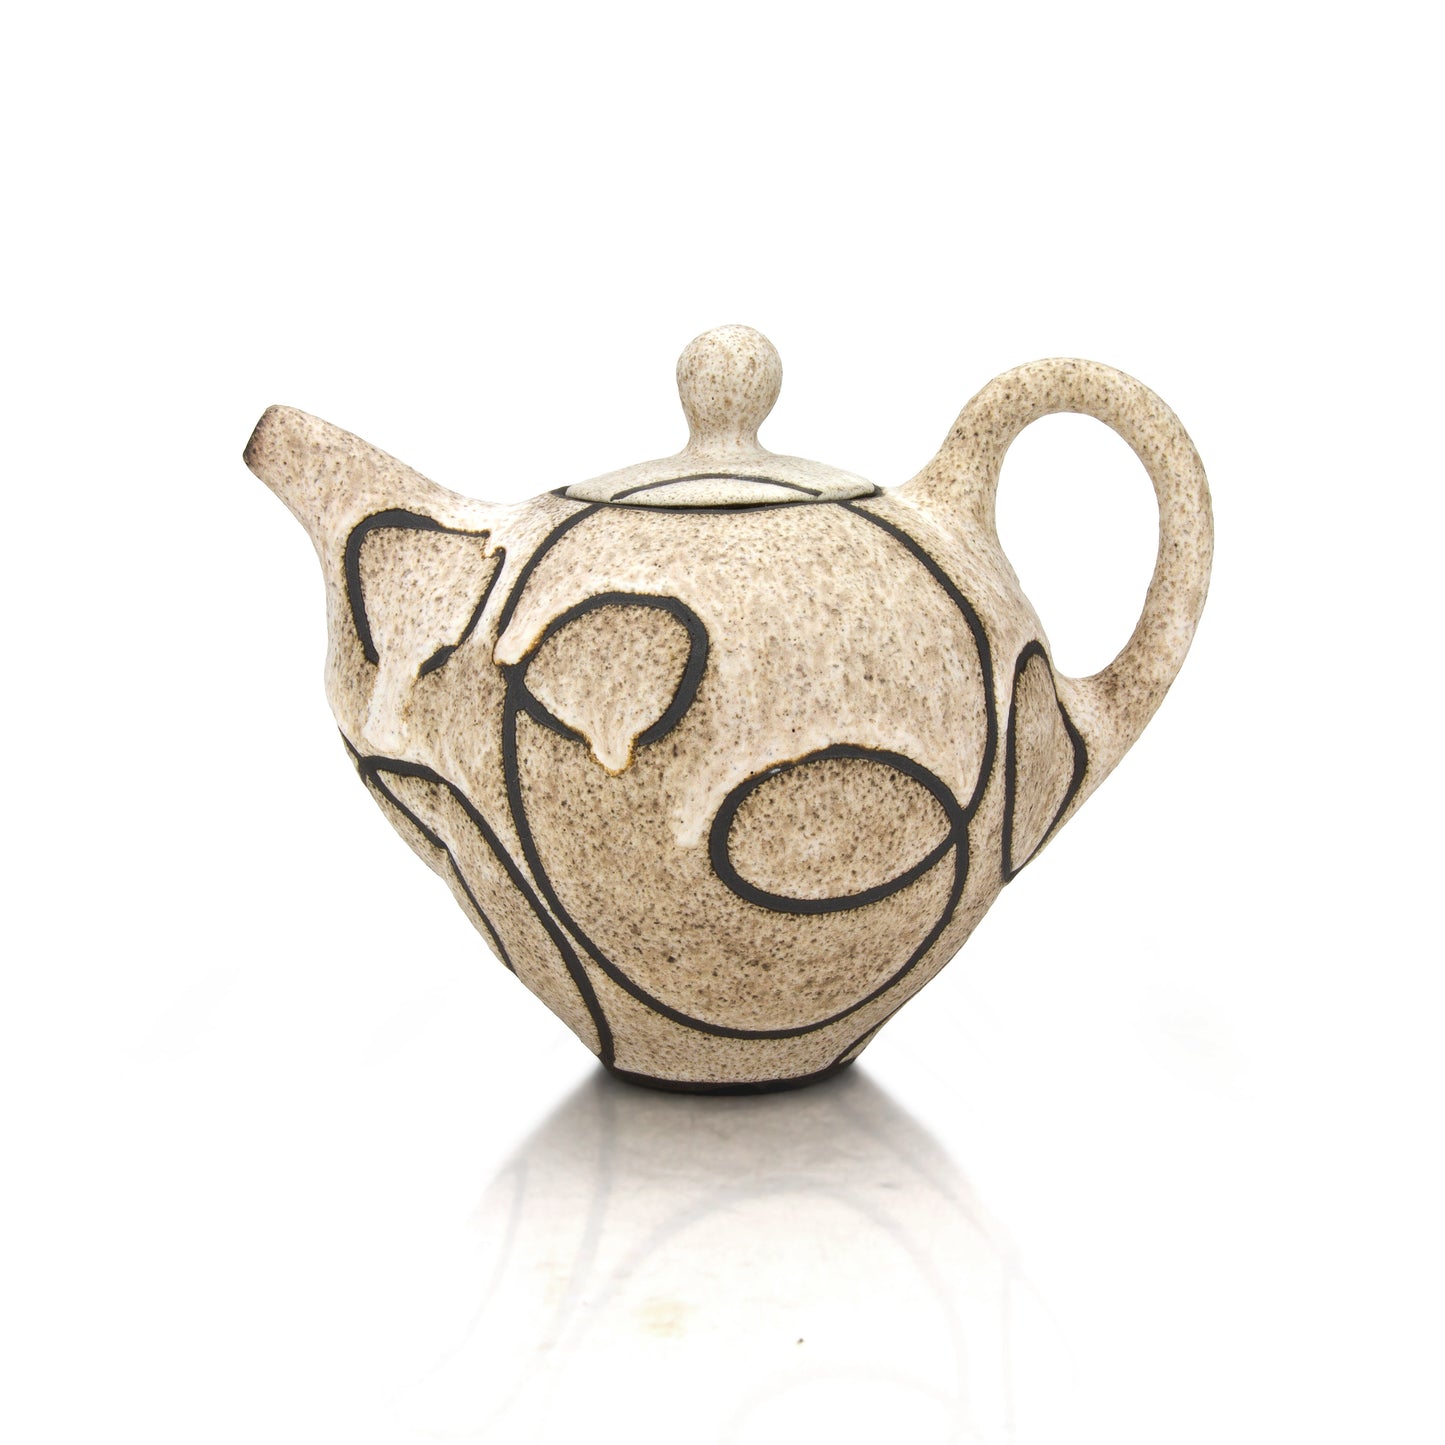 Margaret Bohls 01 - Squiggle Teapot - Signature Piece